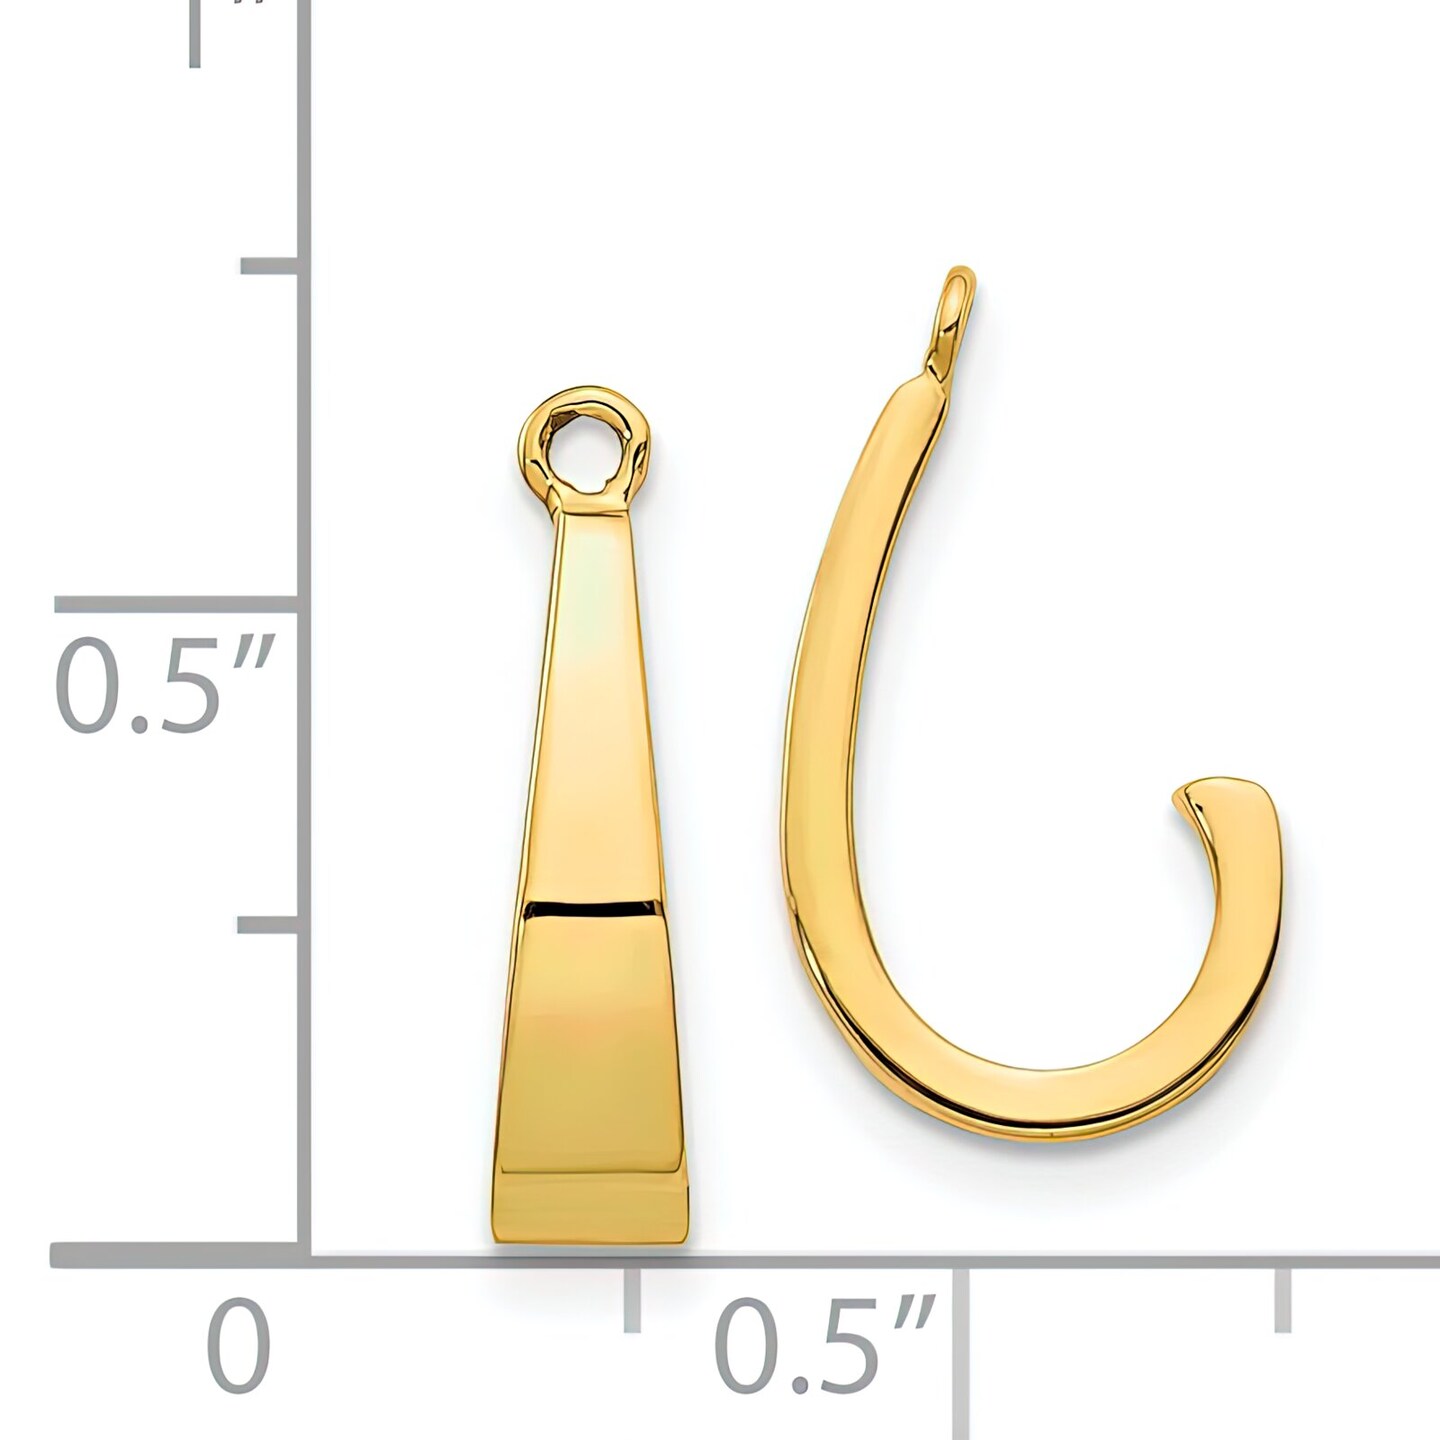 14K Yellow Gold J Hoop Earring Jackets Jewelry 15mm x 4mm